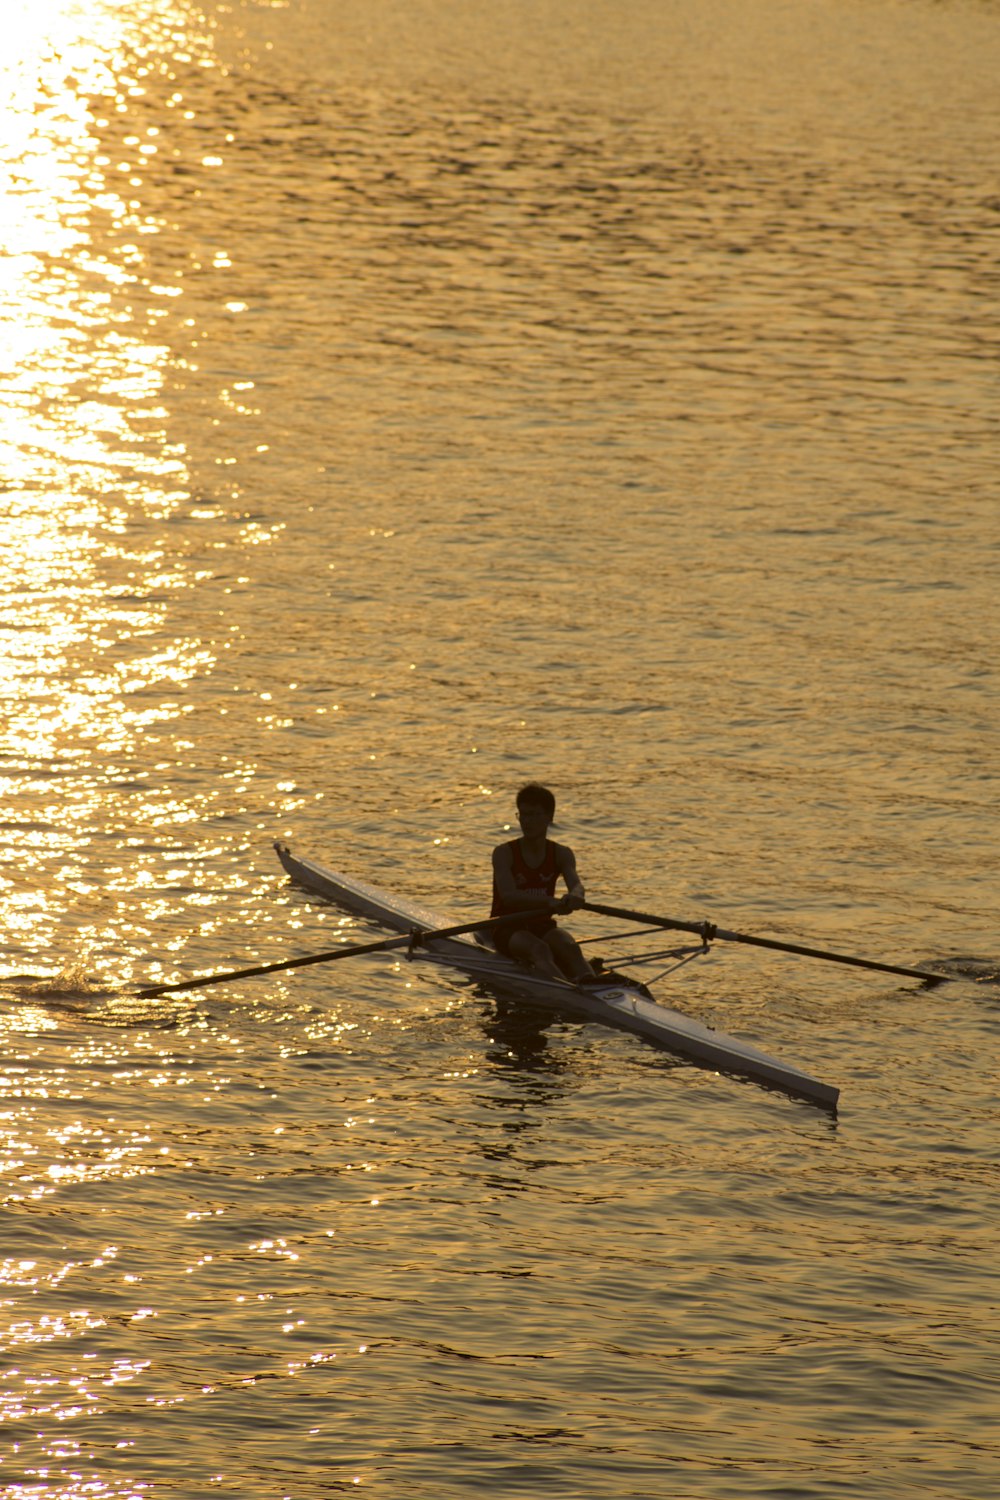 man riding on boat holding boat oar